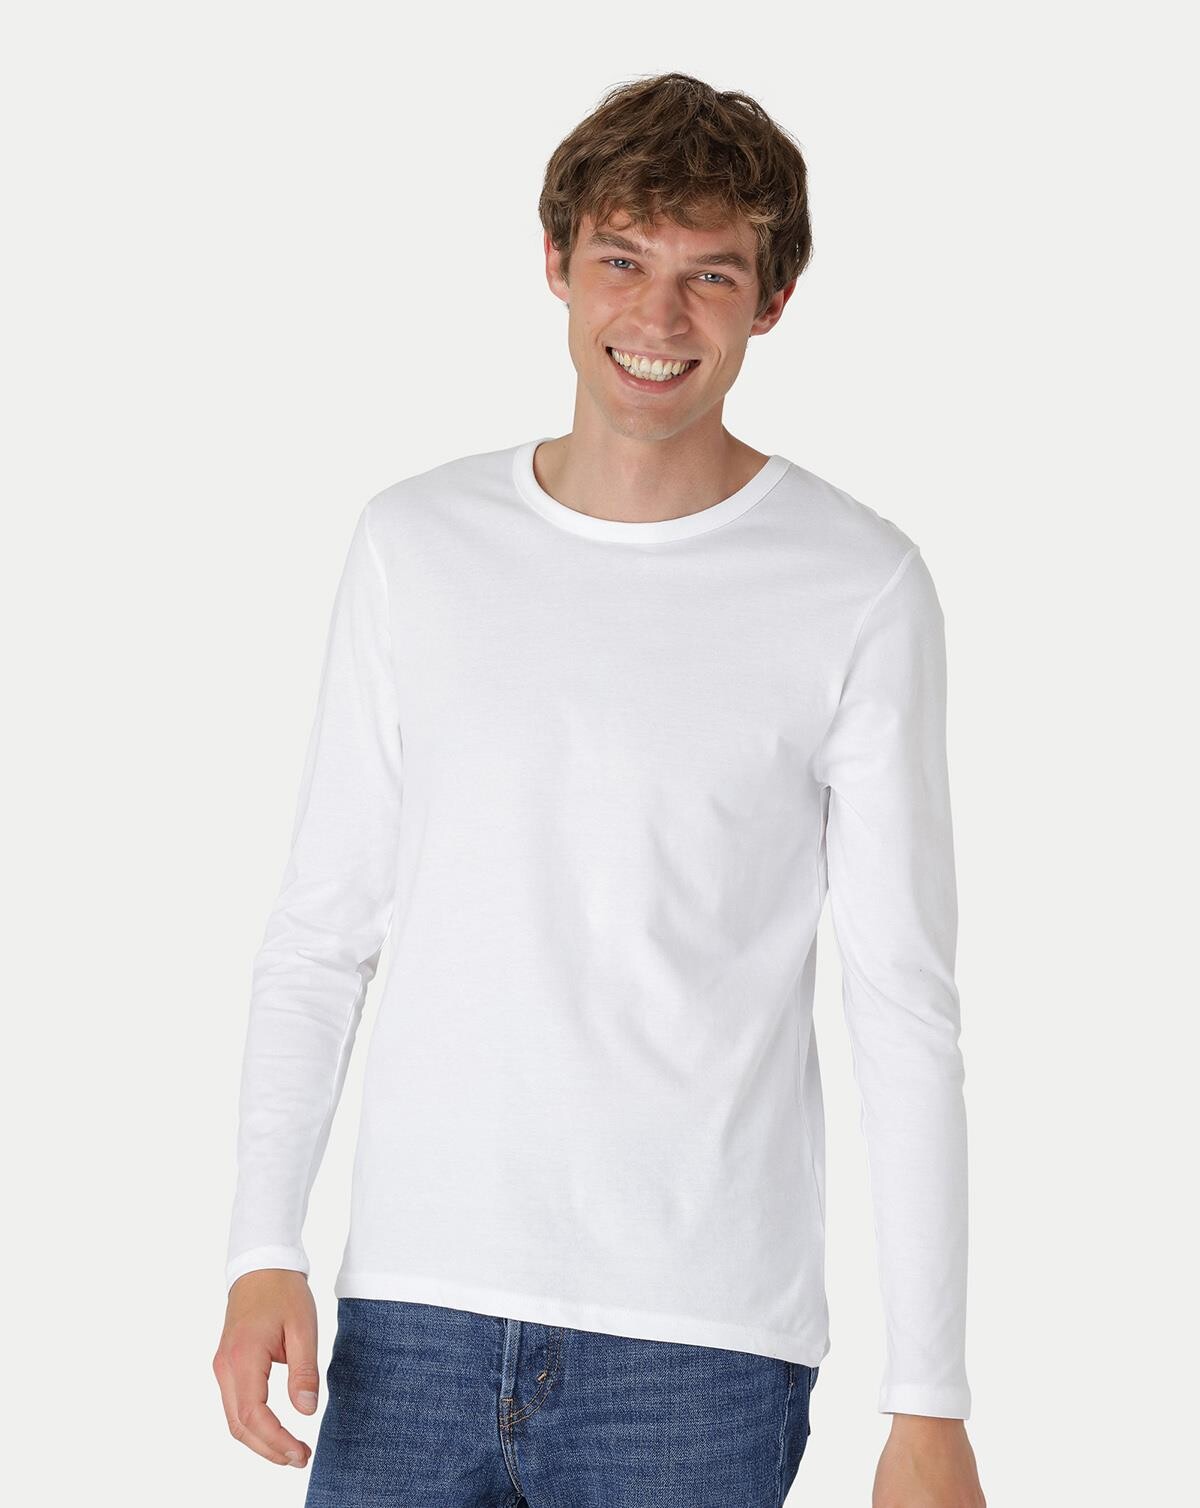 Neutral Økologisk Langærmet T-shirt (Hvid, 2XL)